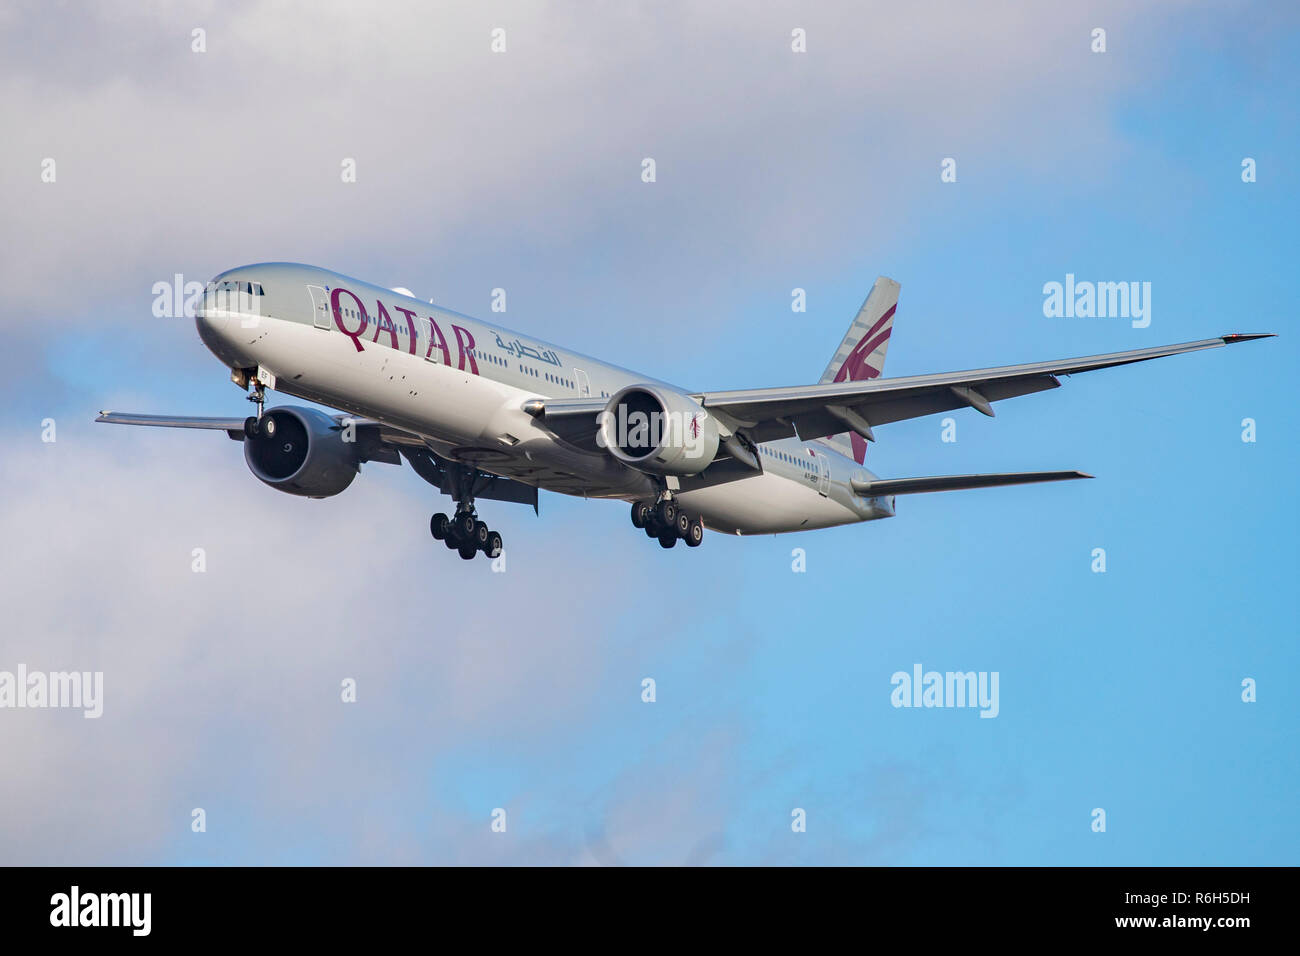 Qatar Airways Boeing 777-300gesehen Landung in London Heathrow International Airport LHR/EGLL in London. Das Flugzeug ist speziell eine Boeing 777-3 DZ (ER) Mit der Registrierung einen 7-BAF, mit zwei der größten Jet Motoren ausgerüstet, die GE90. Qatar Airways verbindet London mit Doha auf einer täglichen Basis. Stockfoto